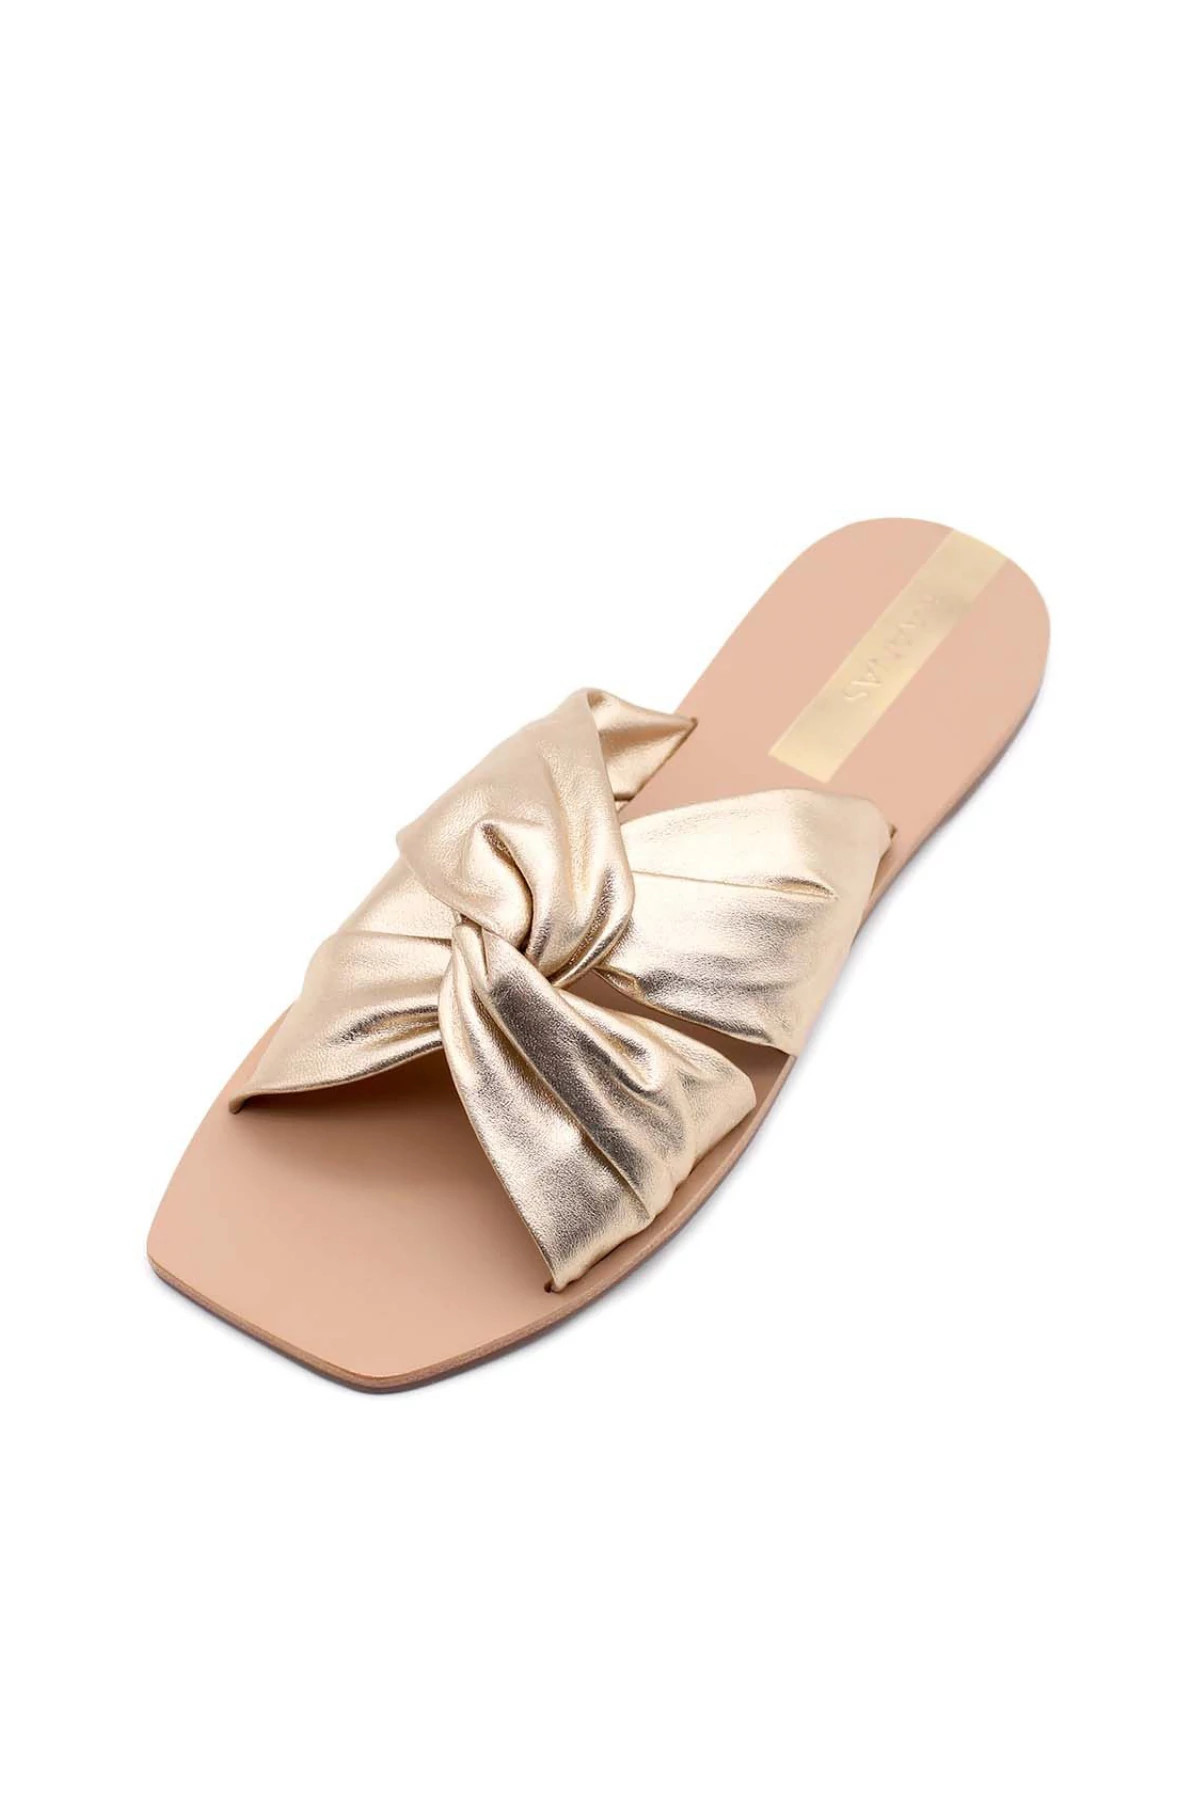 GOLD Belem Crossover Knot Sandals image number 3